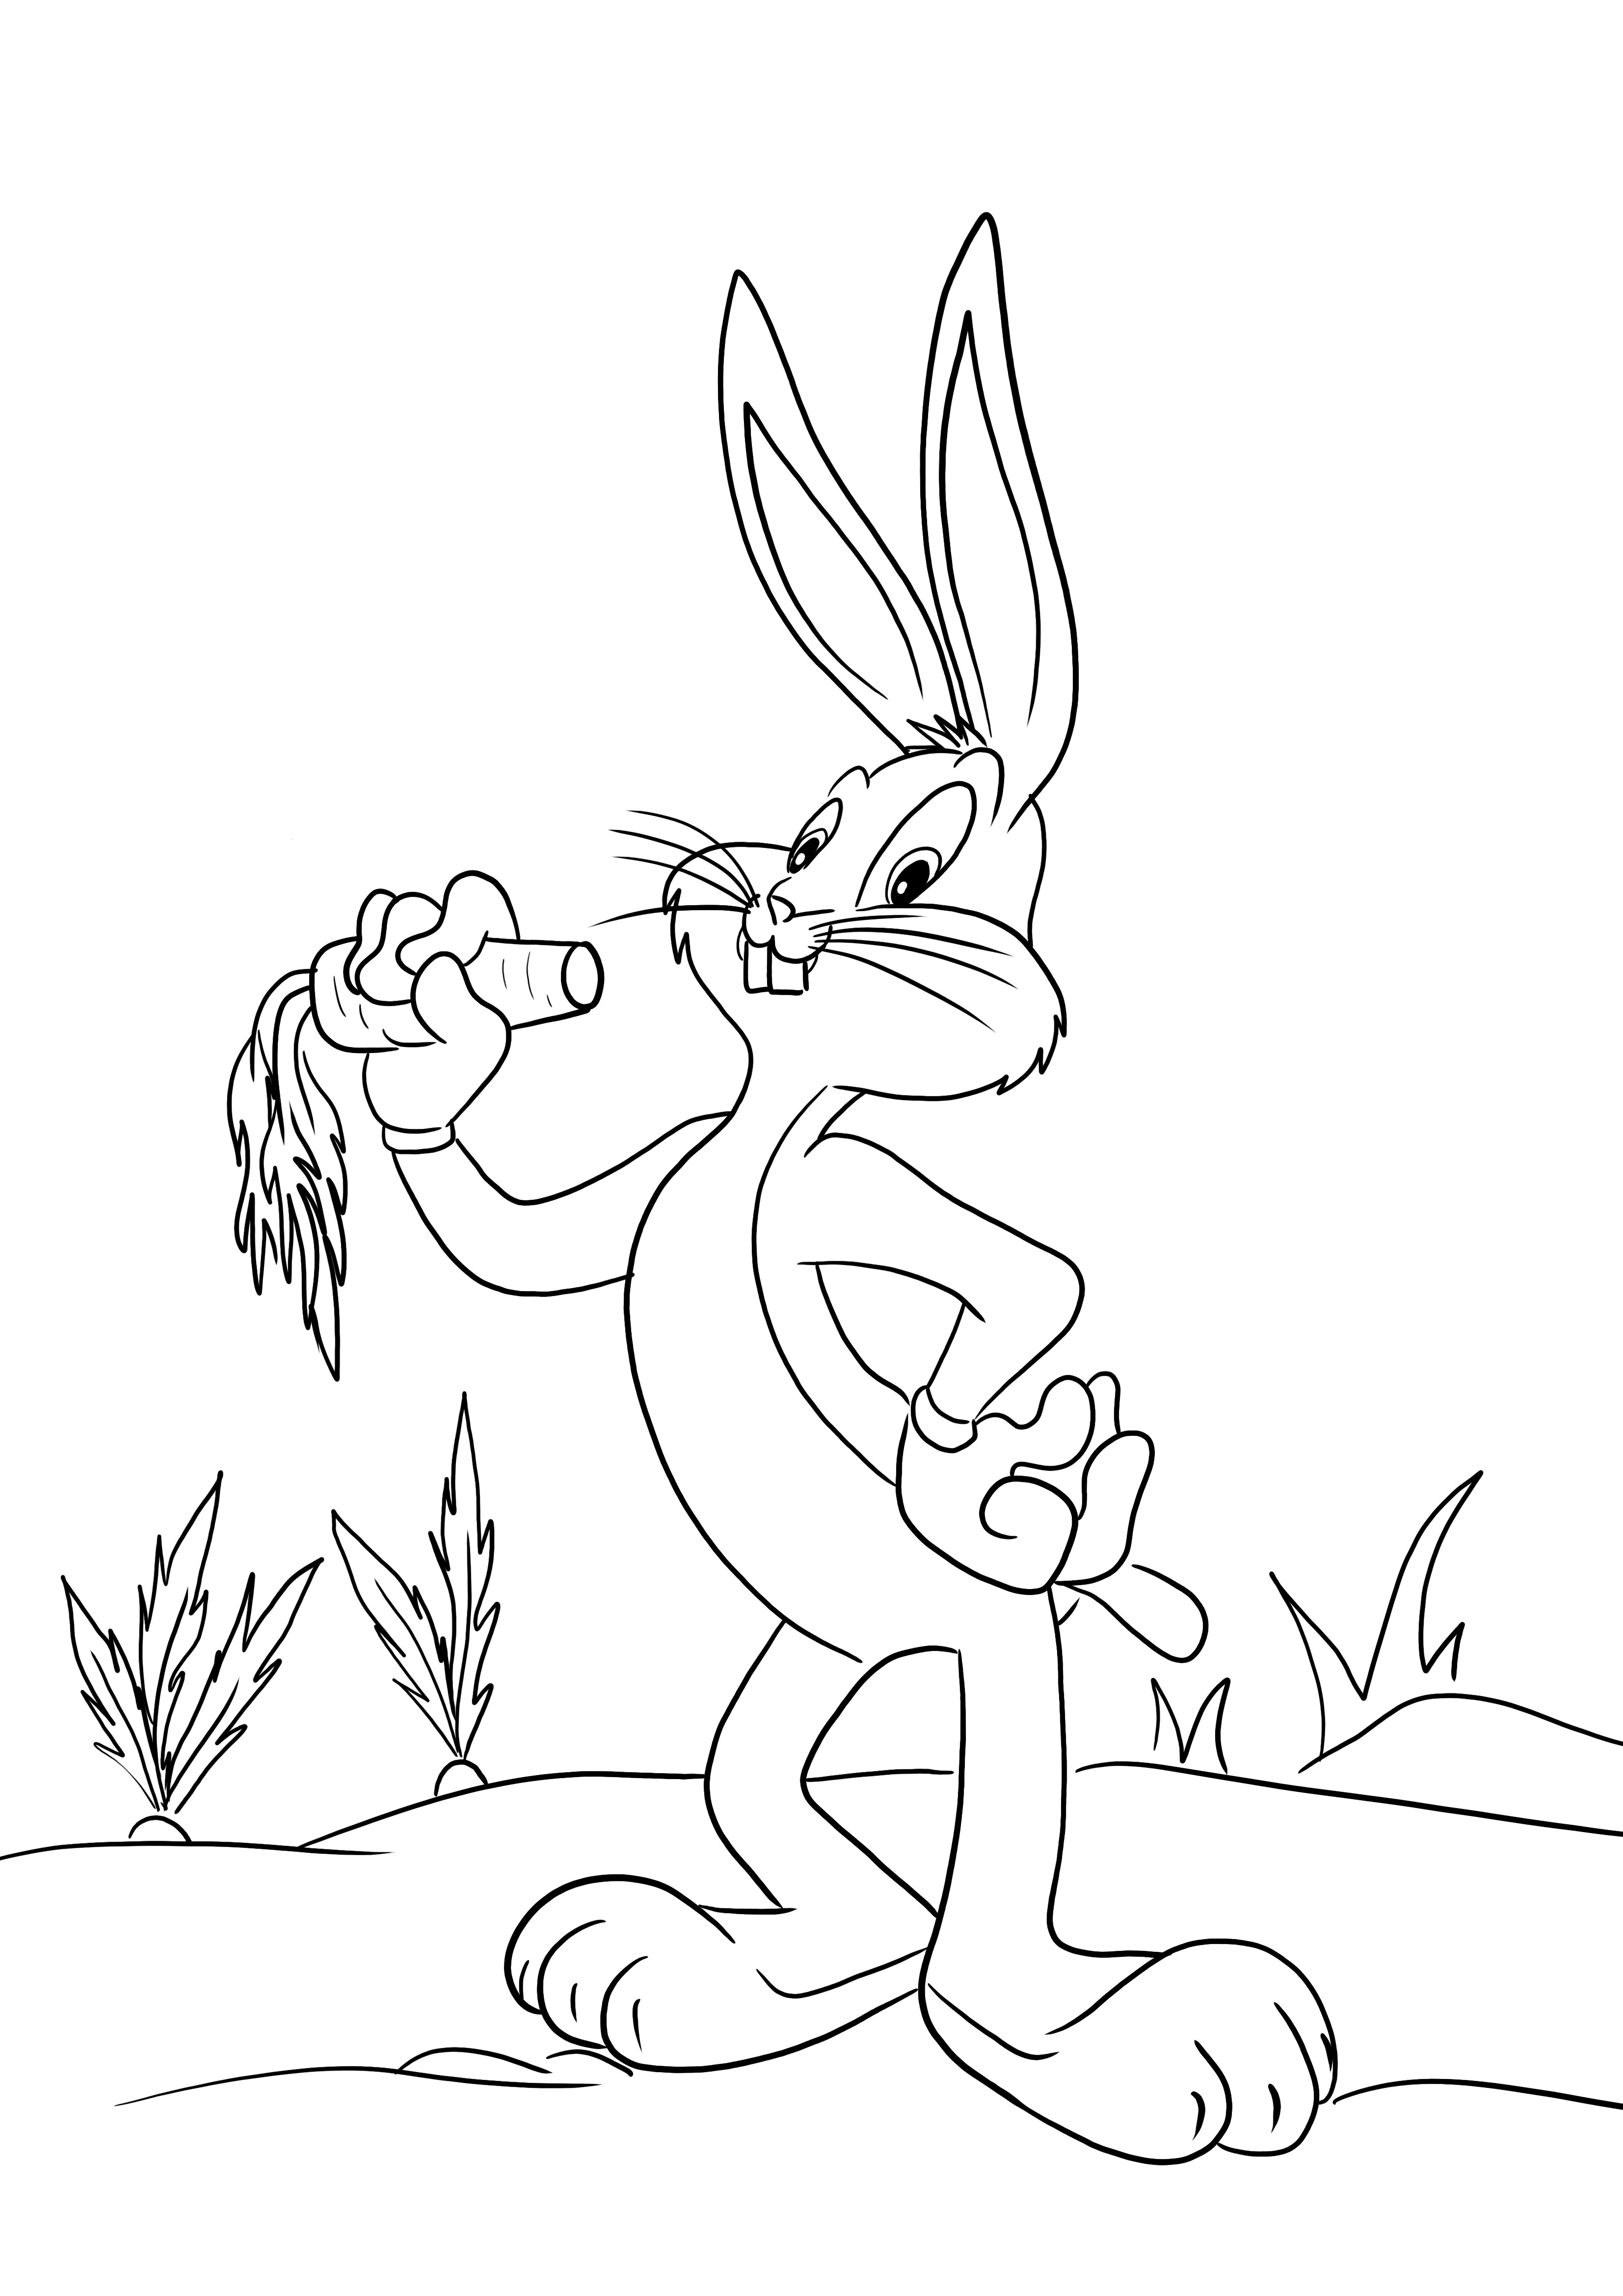 Könnyű színező kép Bugs Bunny gyerekeknek színezni és szórakozni